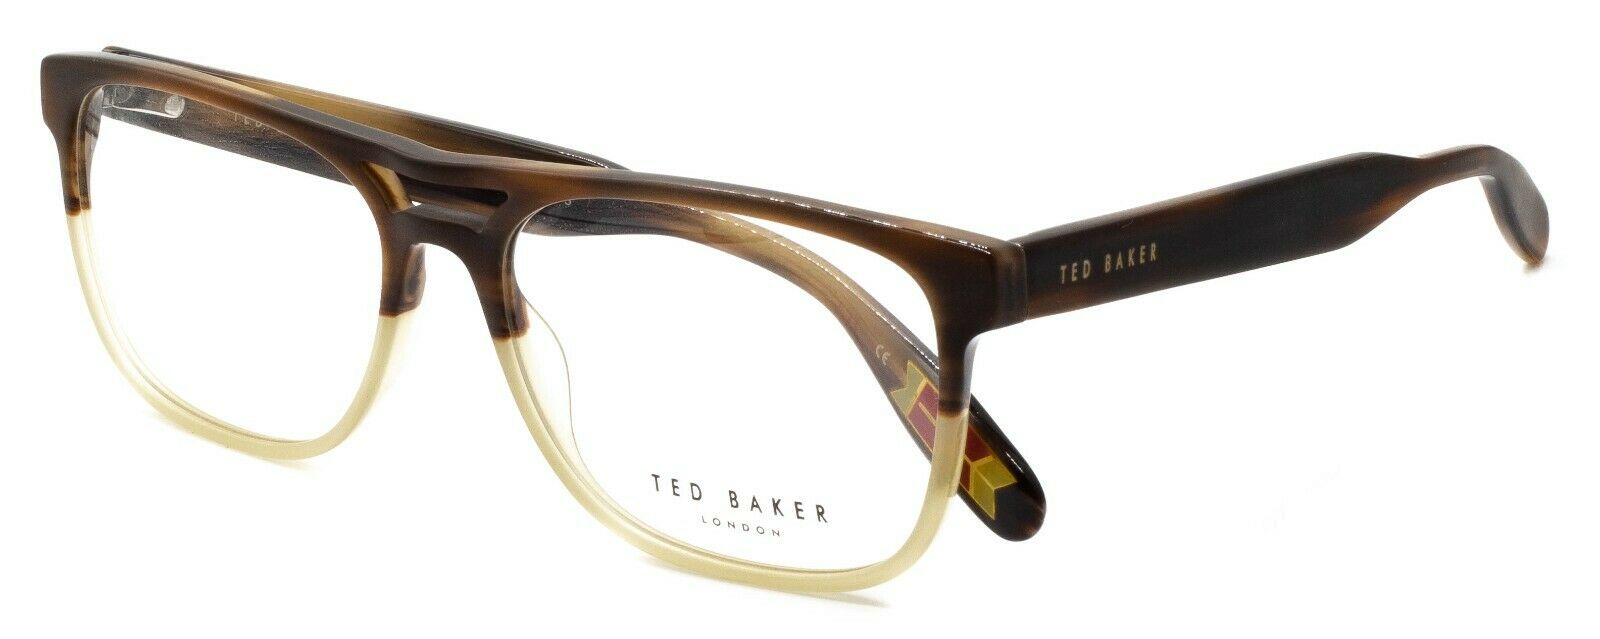 TED BAKER 8207 162 Holden 56mm Eyewear FRAMES Glasses Eyeglasses RX Optical New